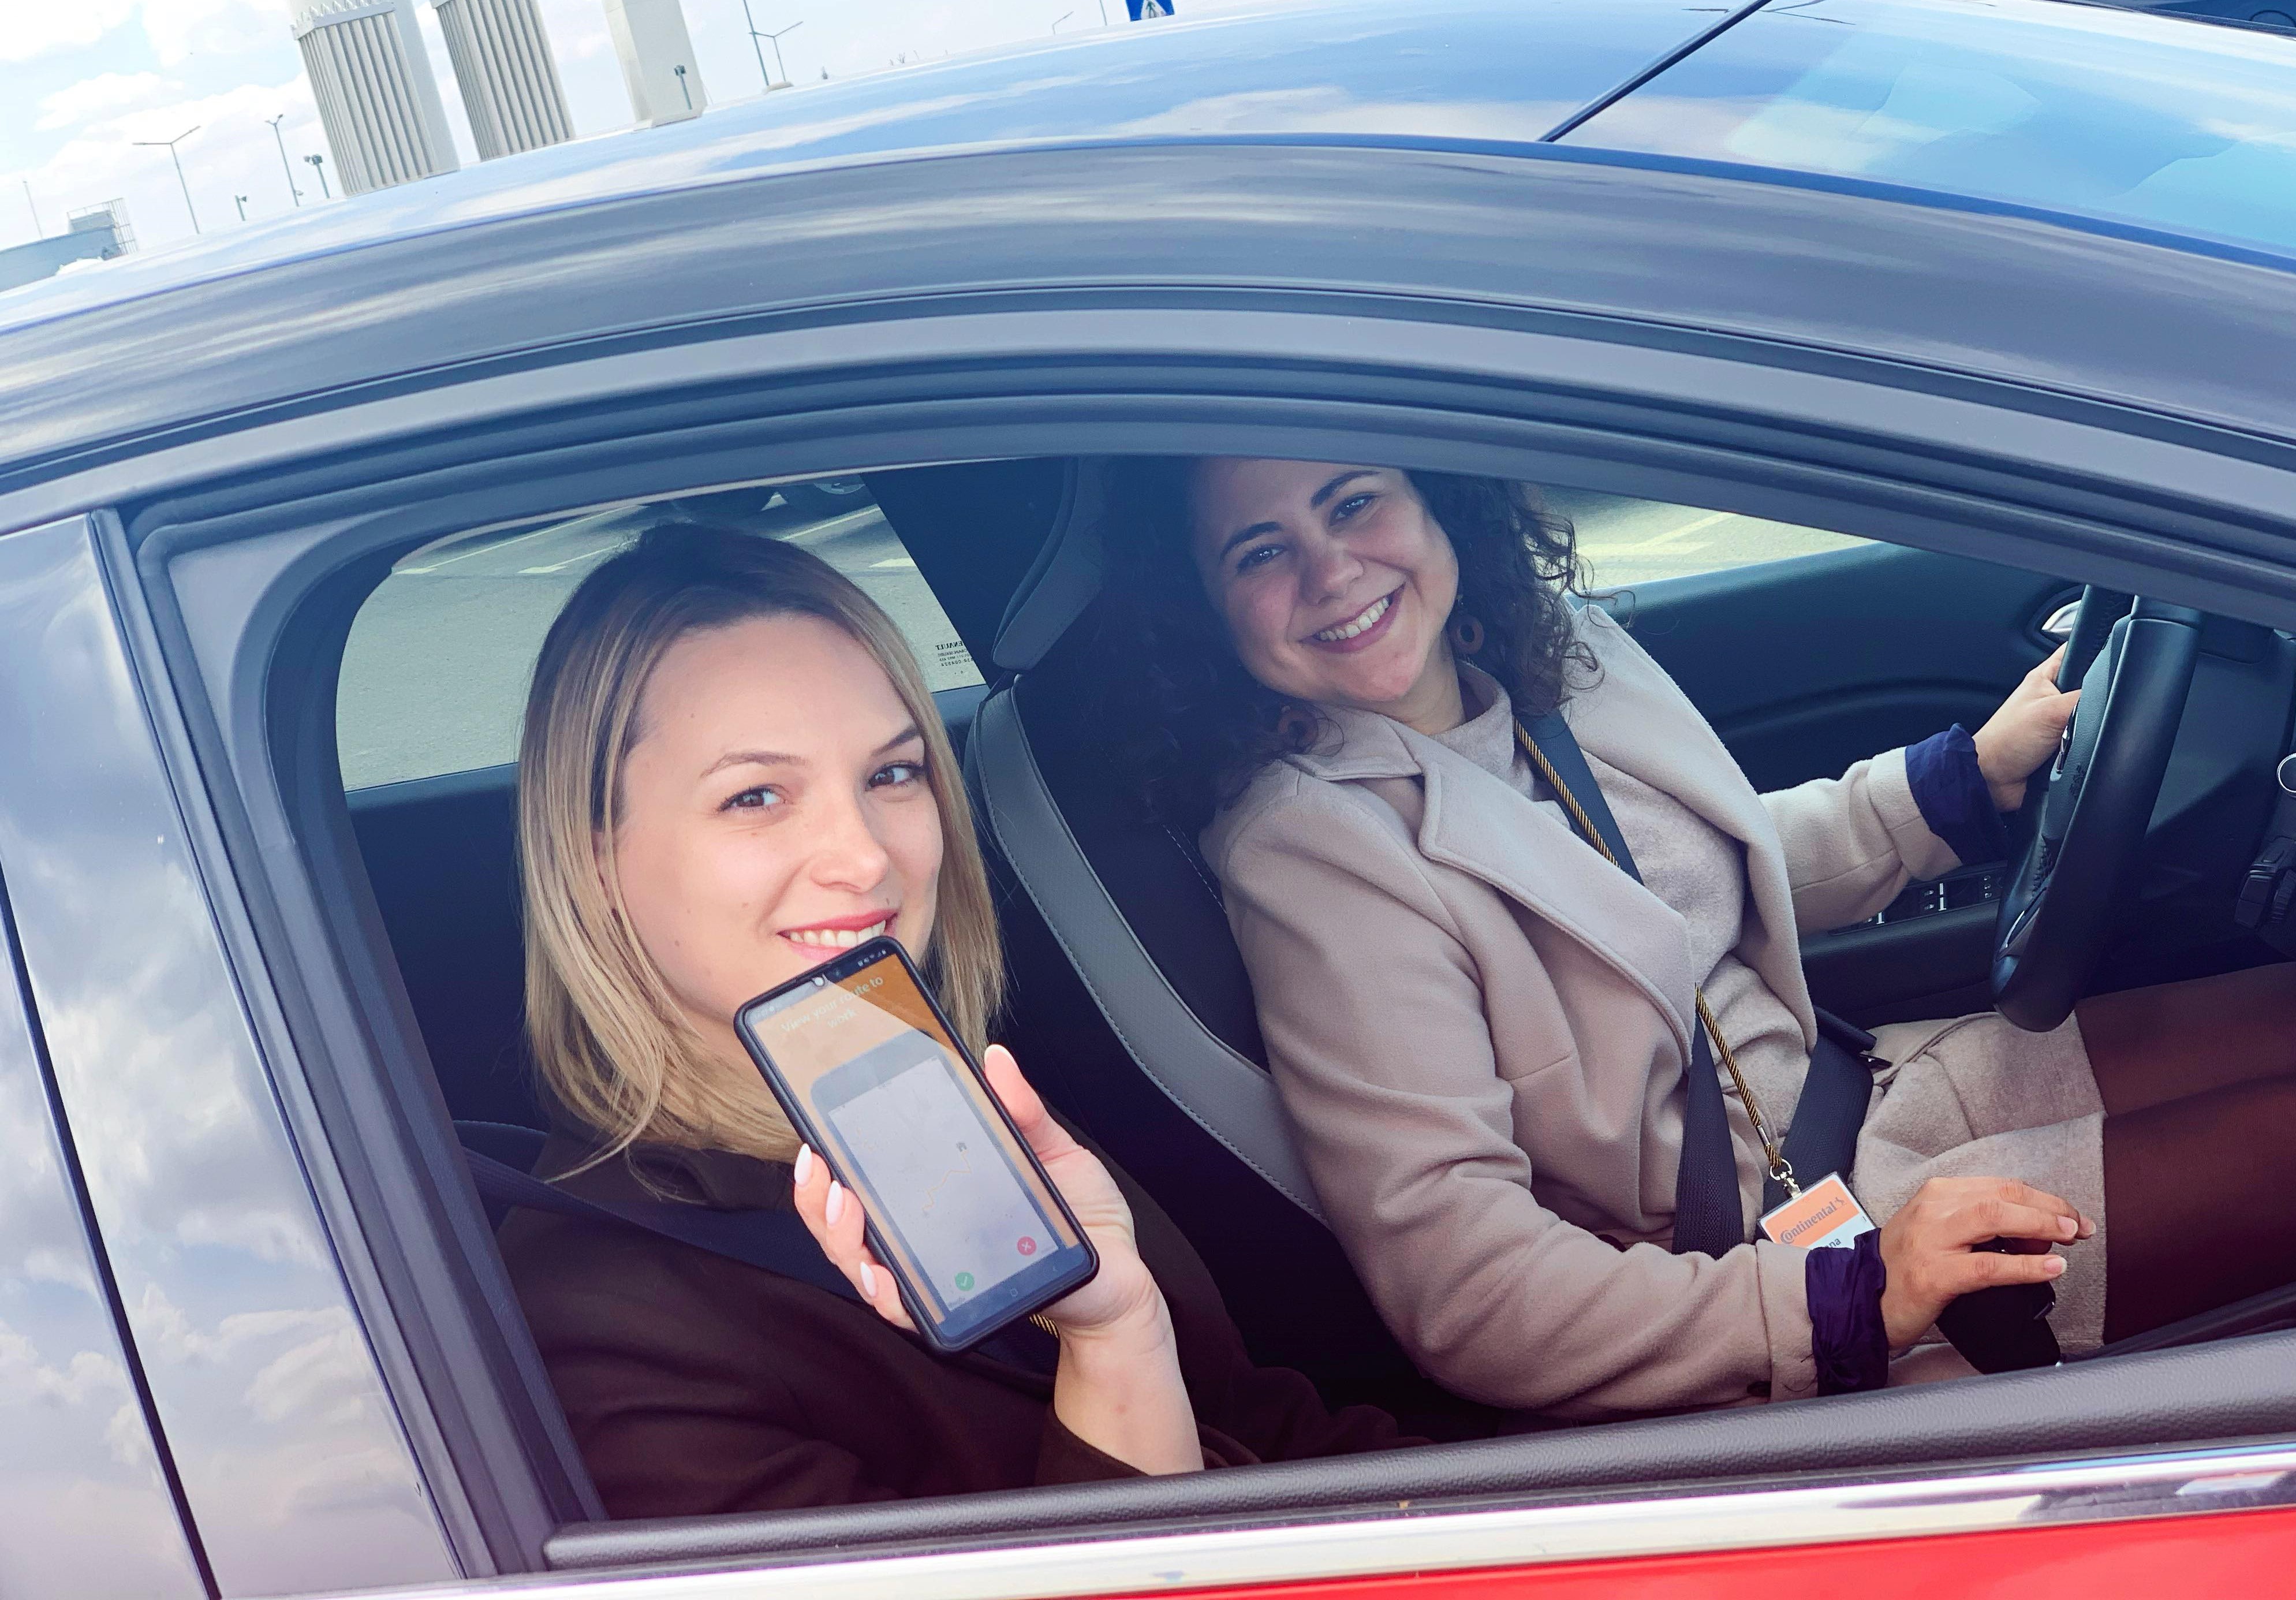 Prima companie din Sibiu care lansează o aplicație de ride sharing pentru angajați